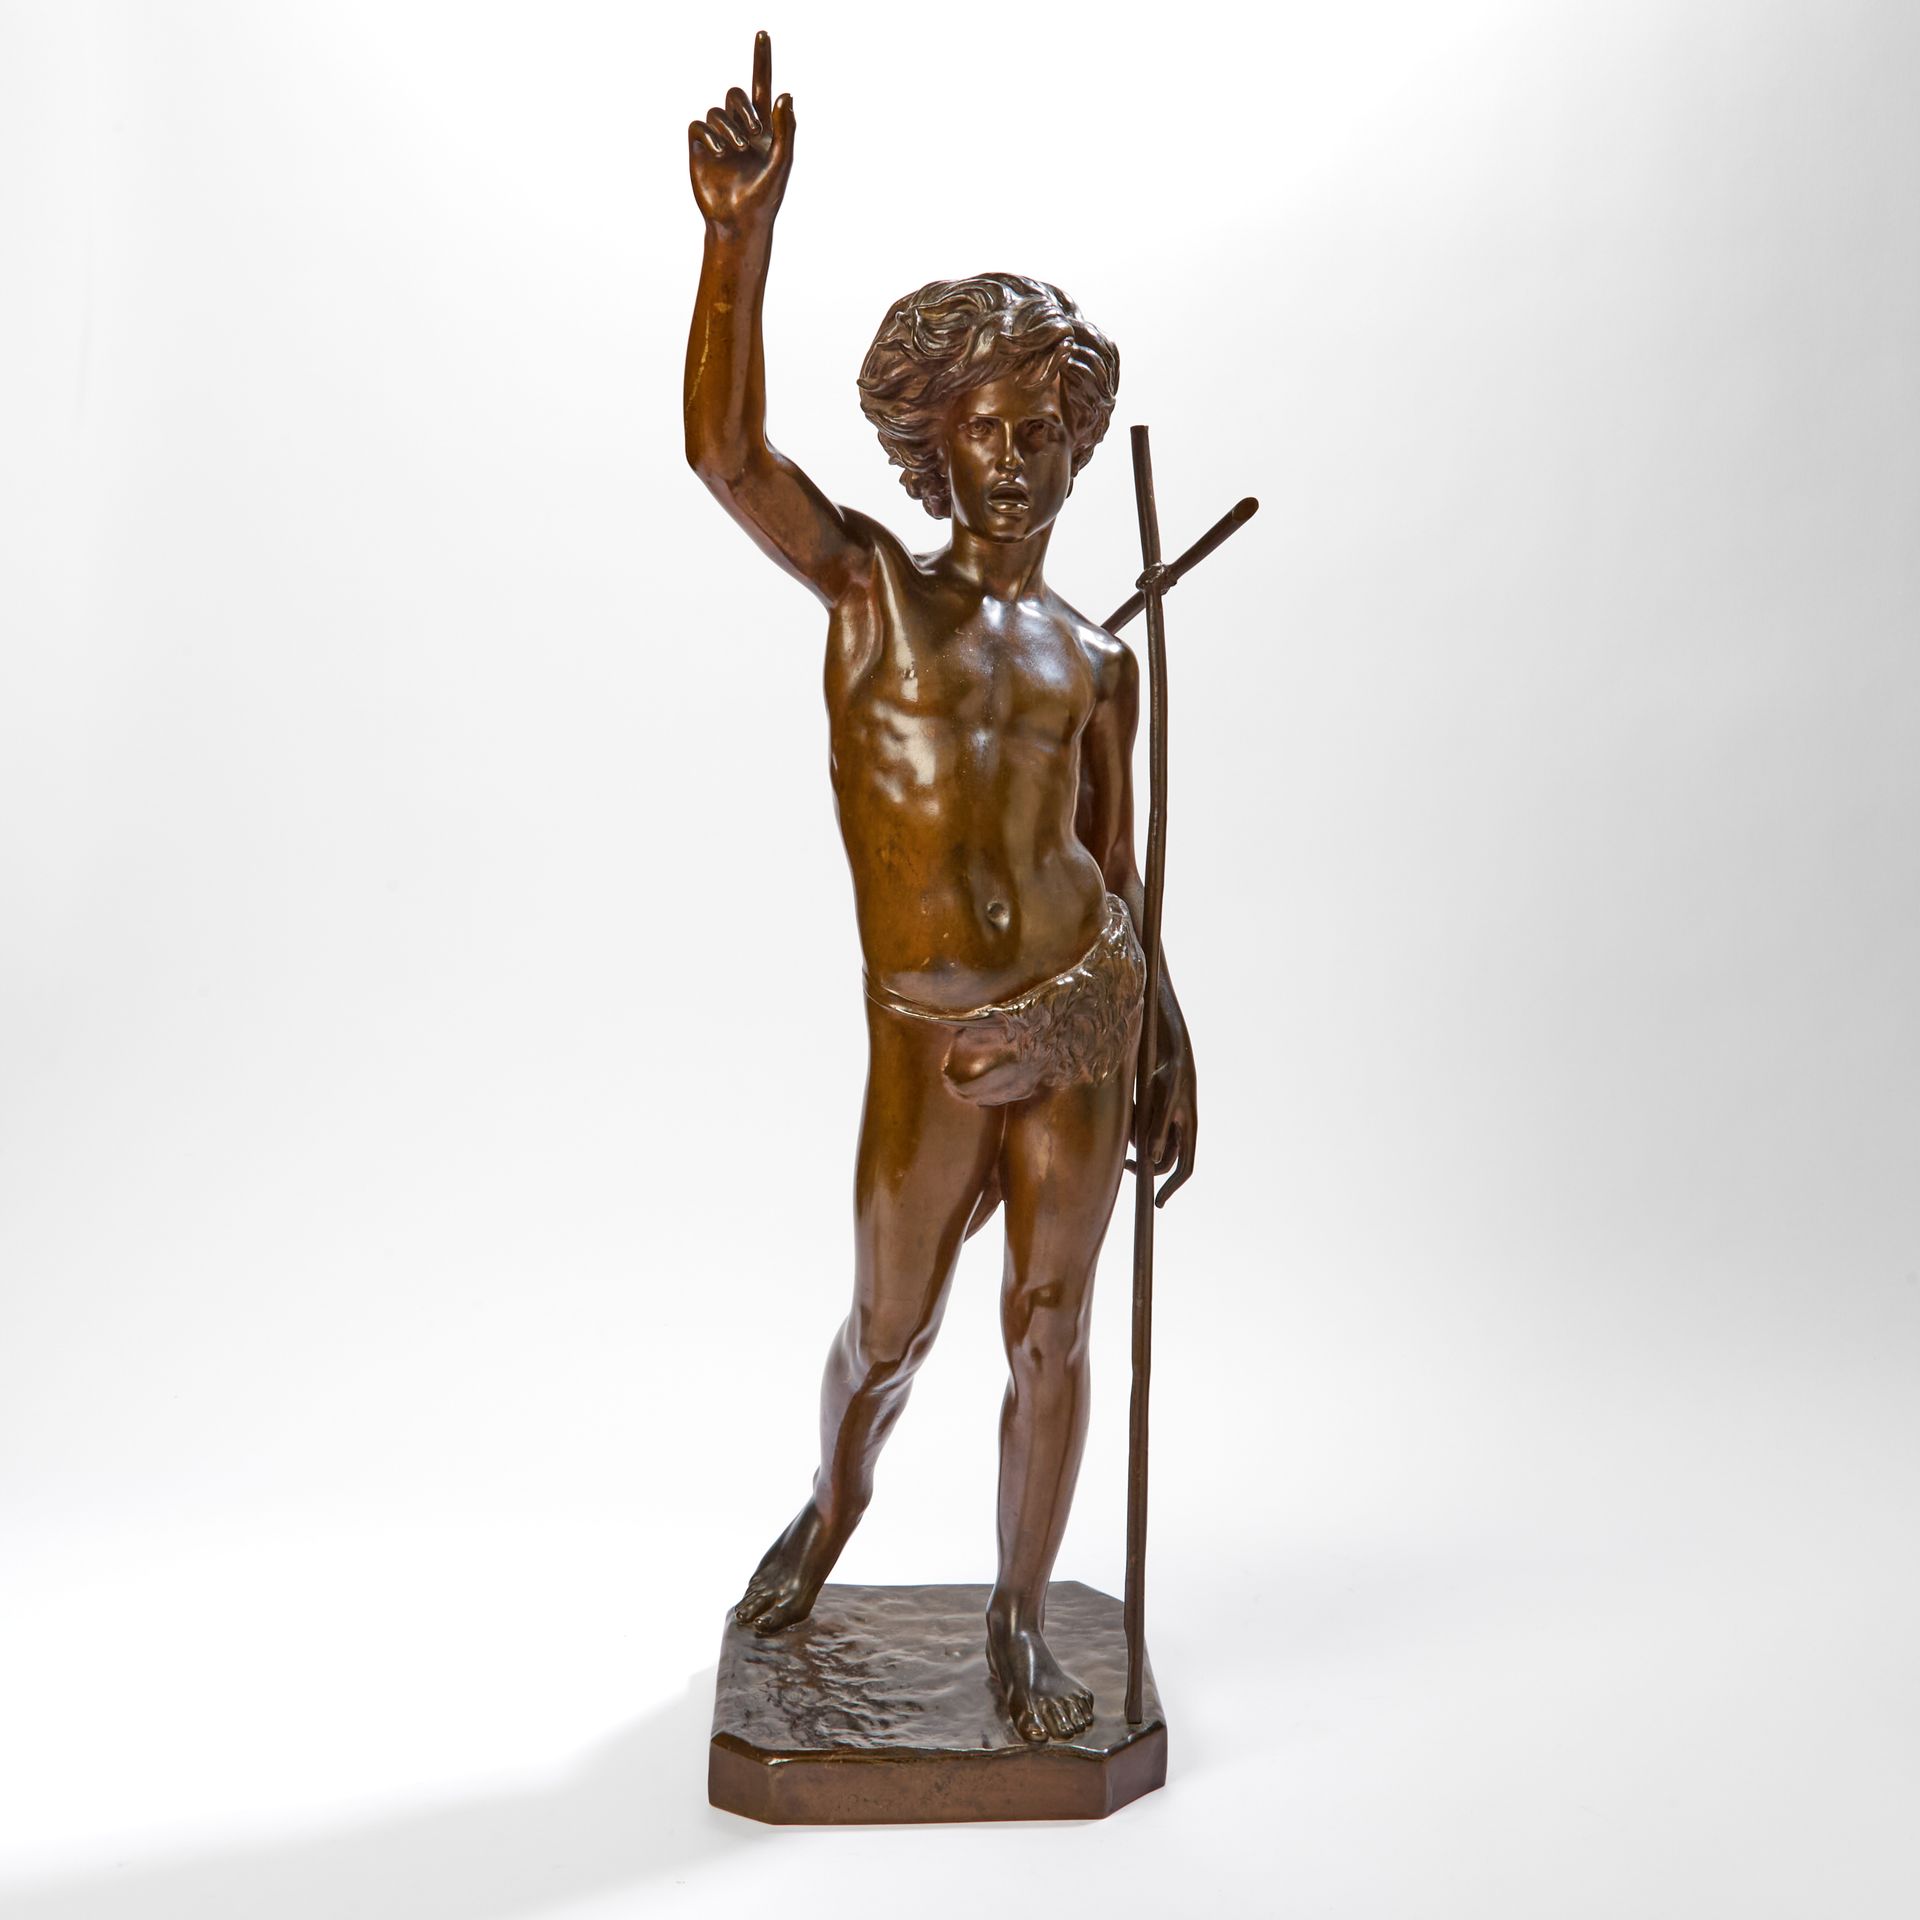 Null 保罗-杜博瓦（1829-1905 年）。
施洗者圣约翰。
青铜，带棕色铜锈（划痕），有签名，位于罗马，日期为 1861 年。
创始人标记 F.Barb&hellip;